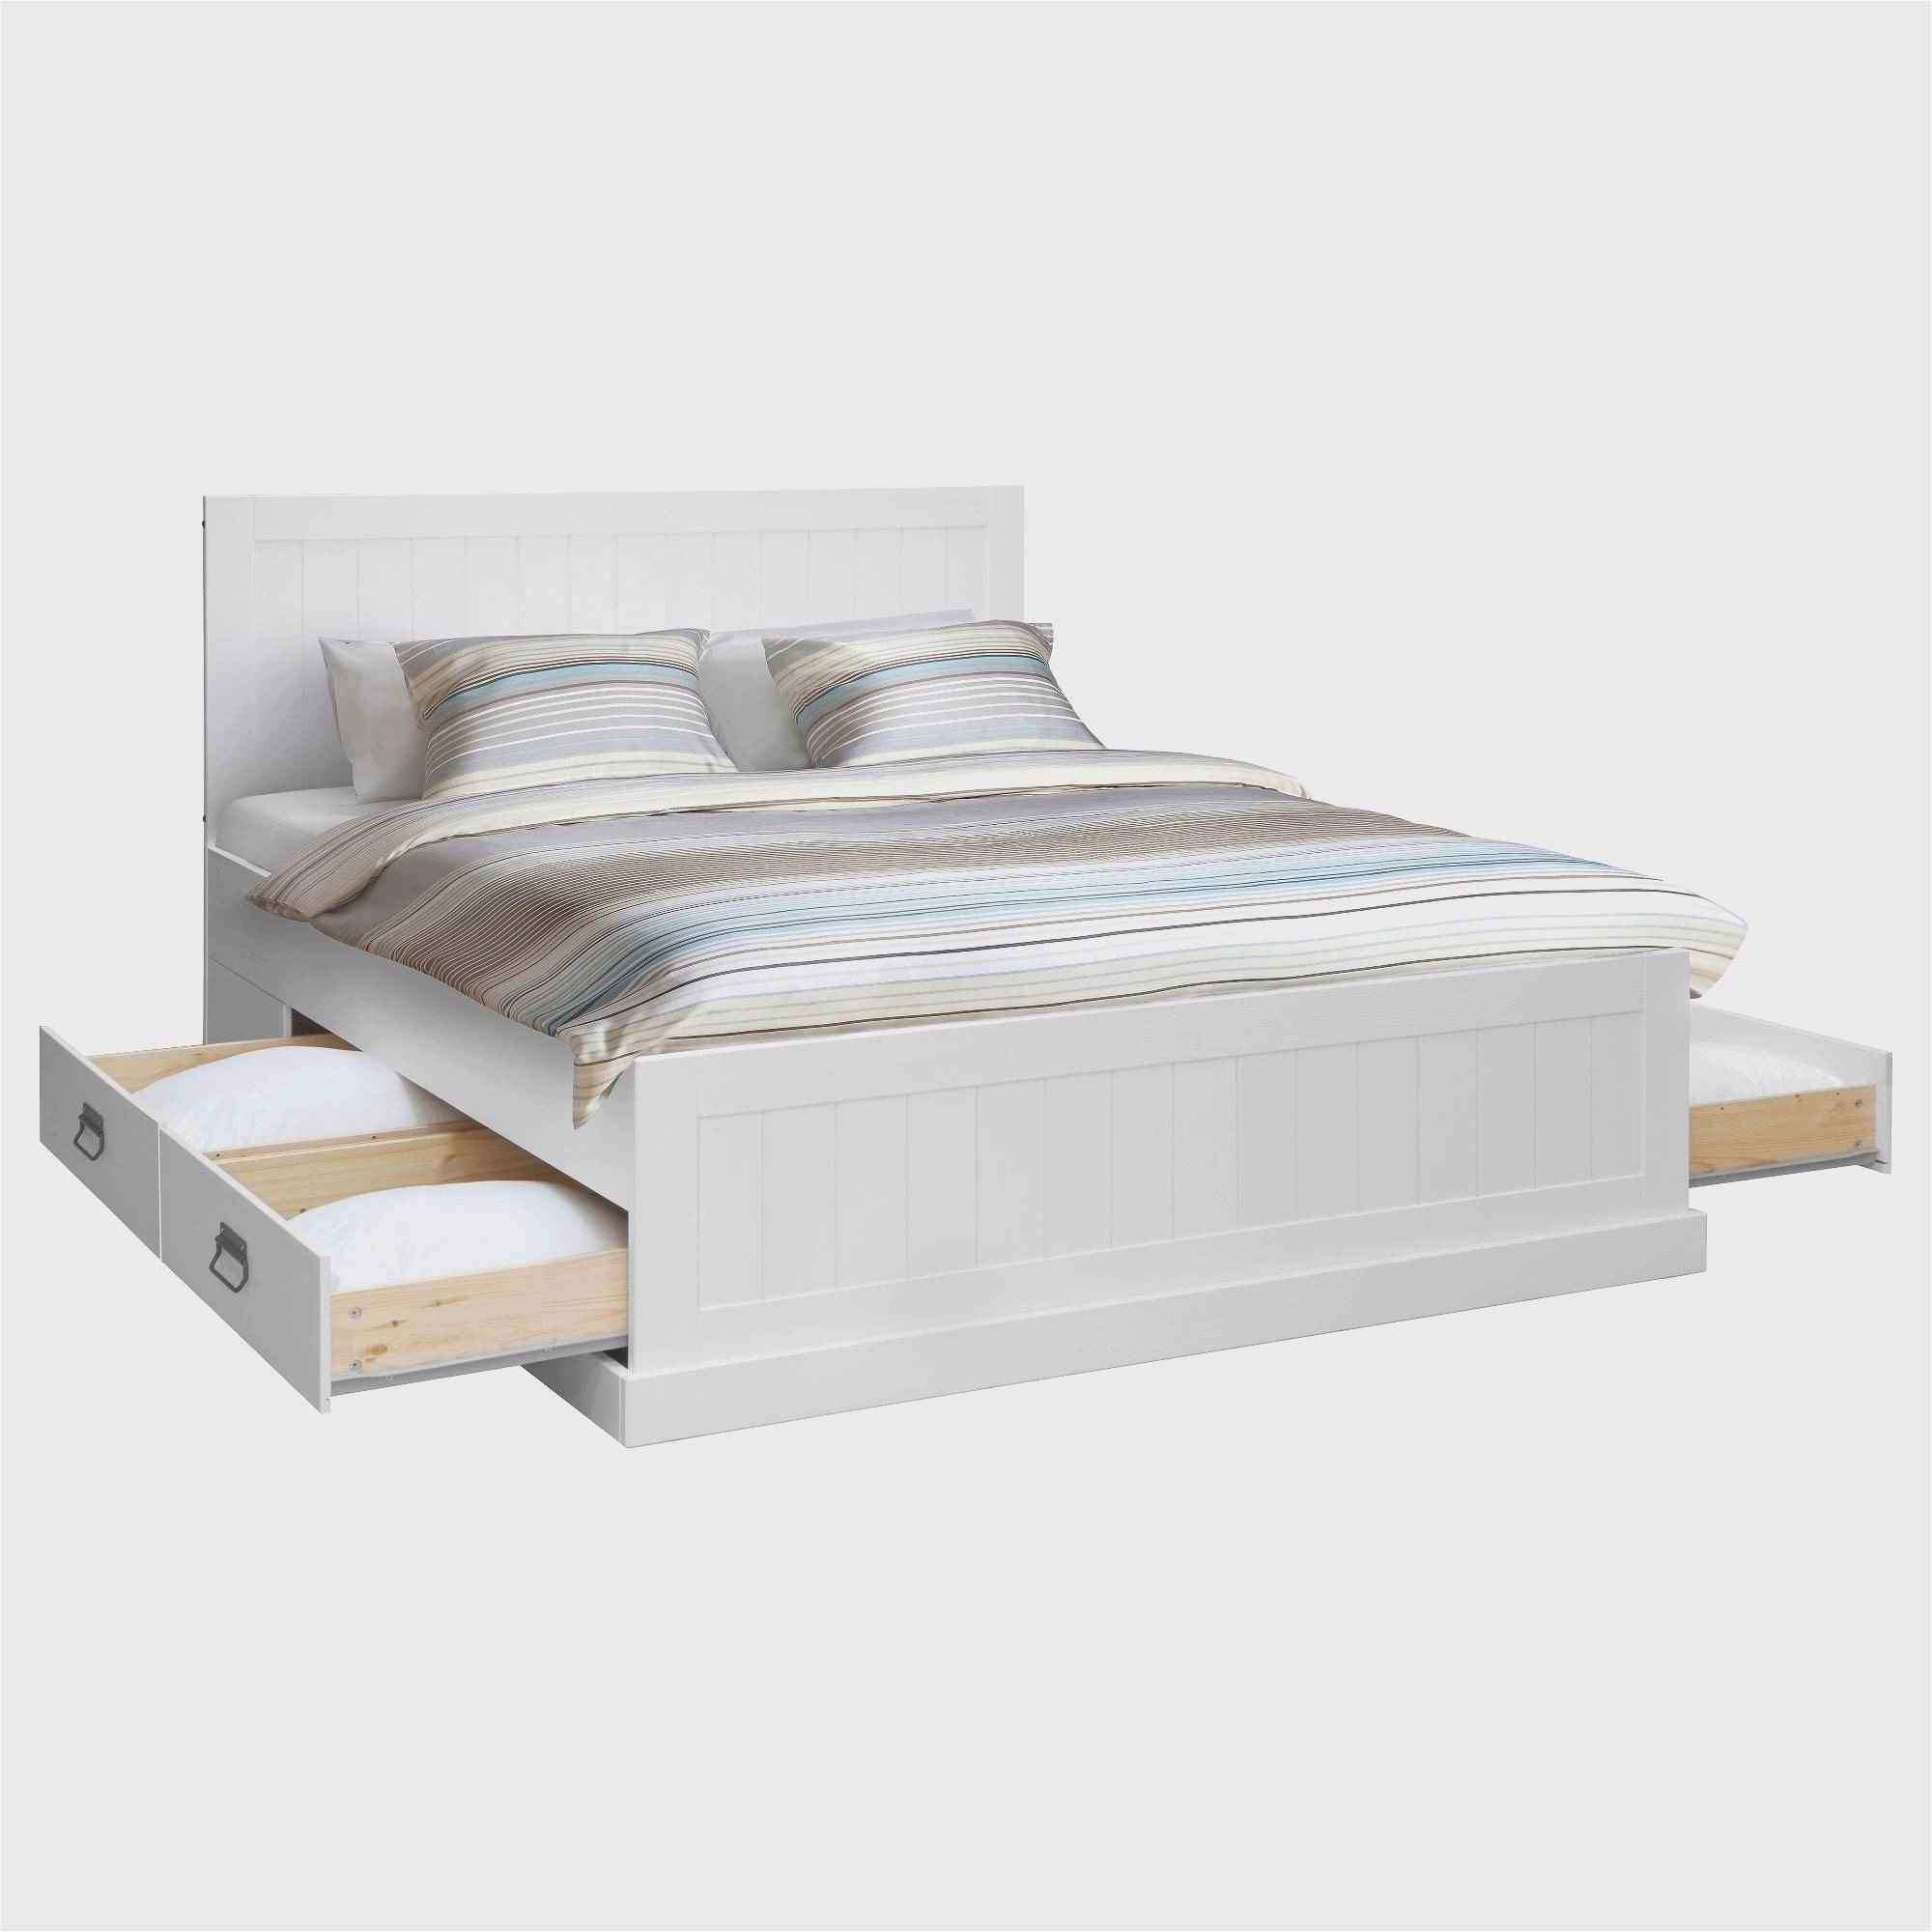 Holzbett Weiß Inspirierend Schlafzimmer Landhausstil Weiß Genial Beste Herrlich Bett